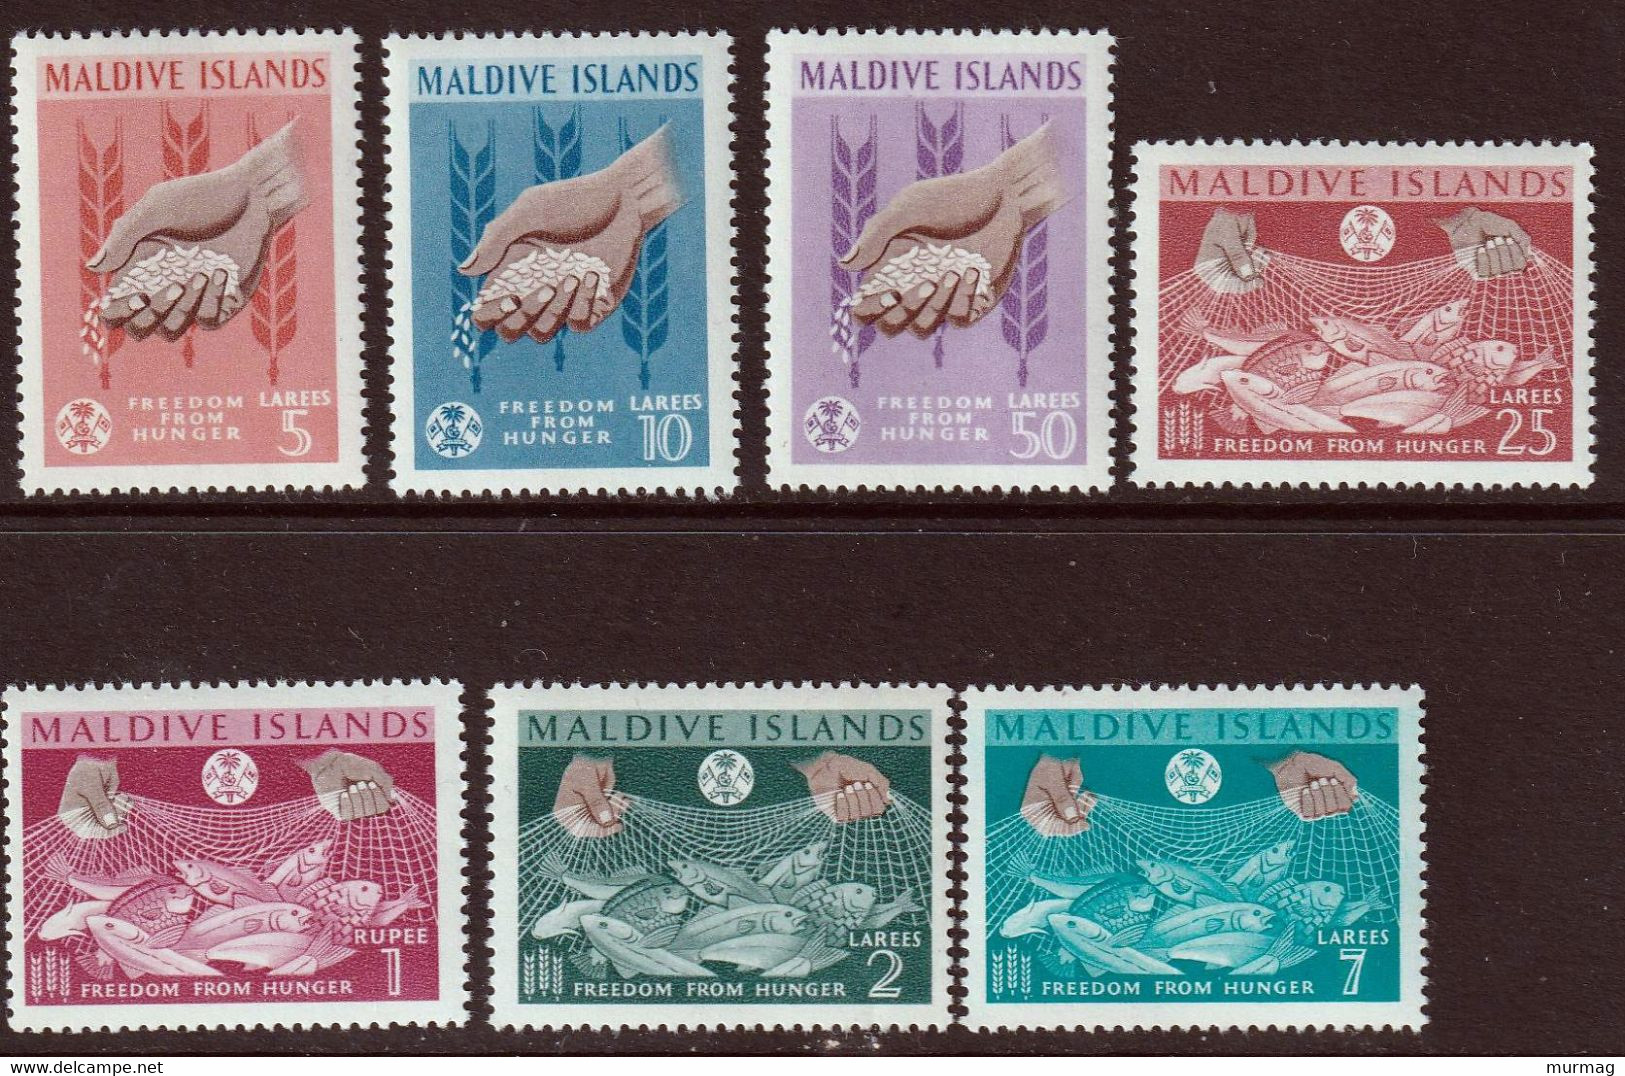 ILES MALDIVE - Lutte Contre La Faim, Agriculture, Pêche, Blé, Mains - Y&T N° 117-123 - MNH - 1963 - Maldives (1965-...)